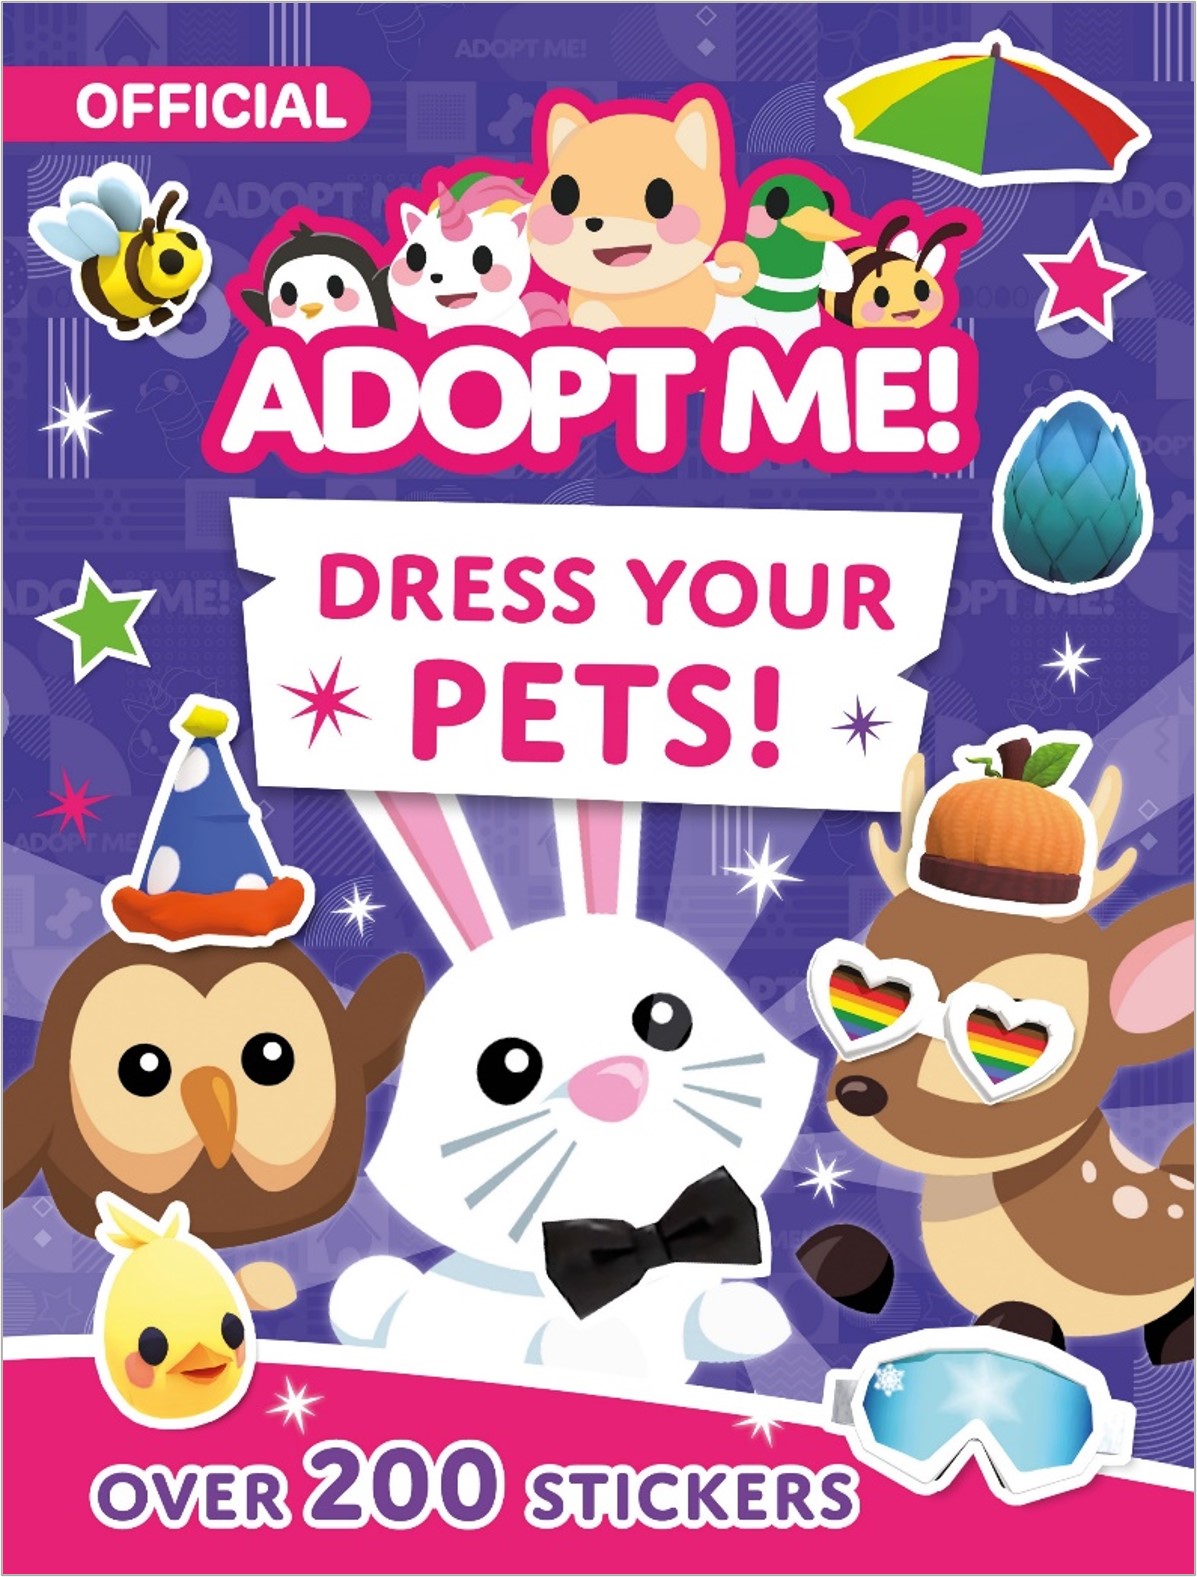 Adopt Me! Dress Your Pets!